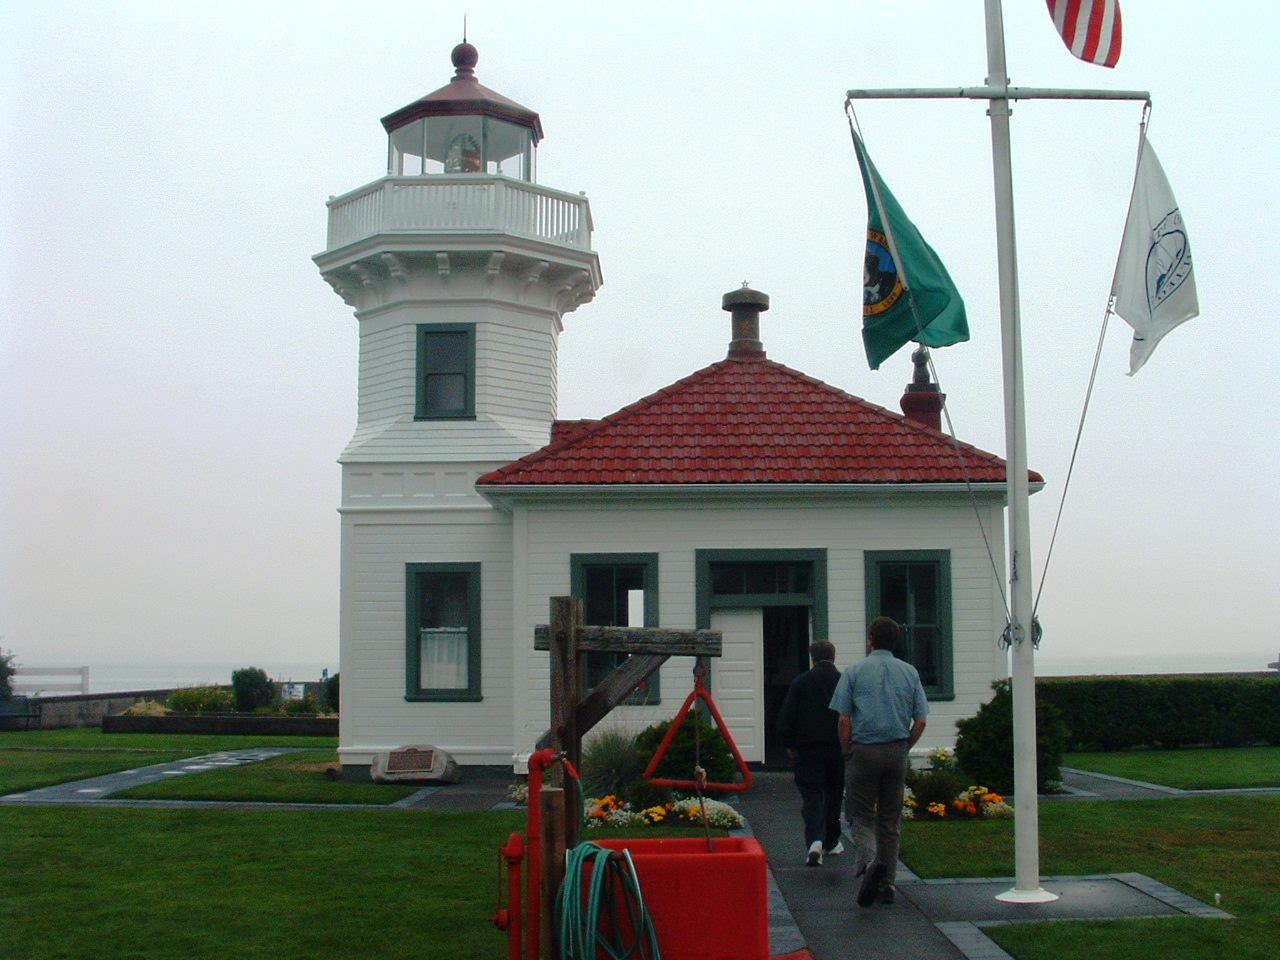 Western Washington - Lighthouse At Edmonds